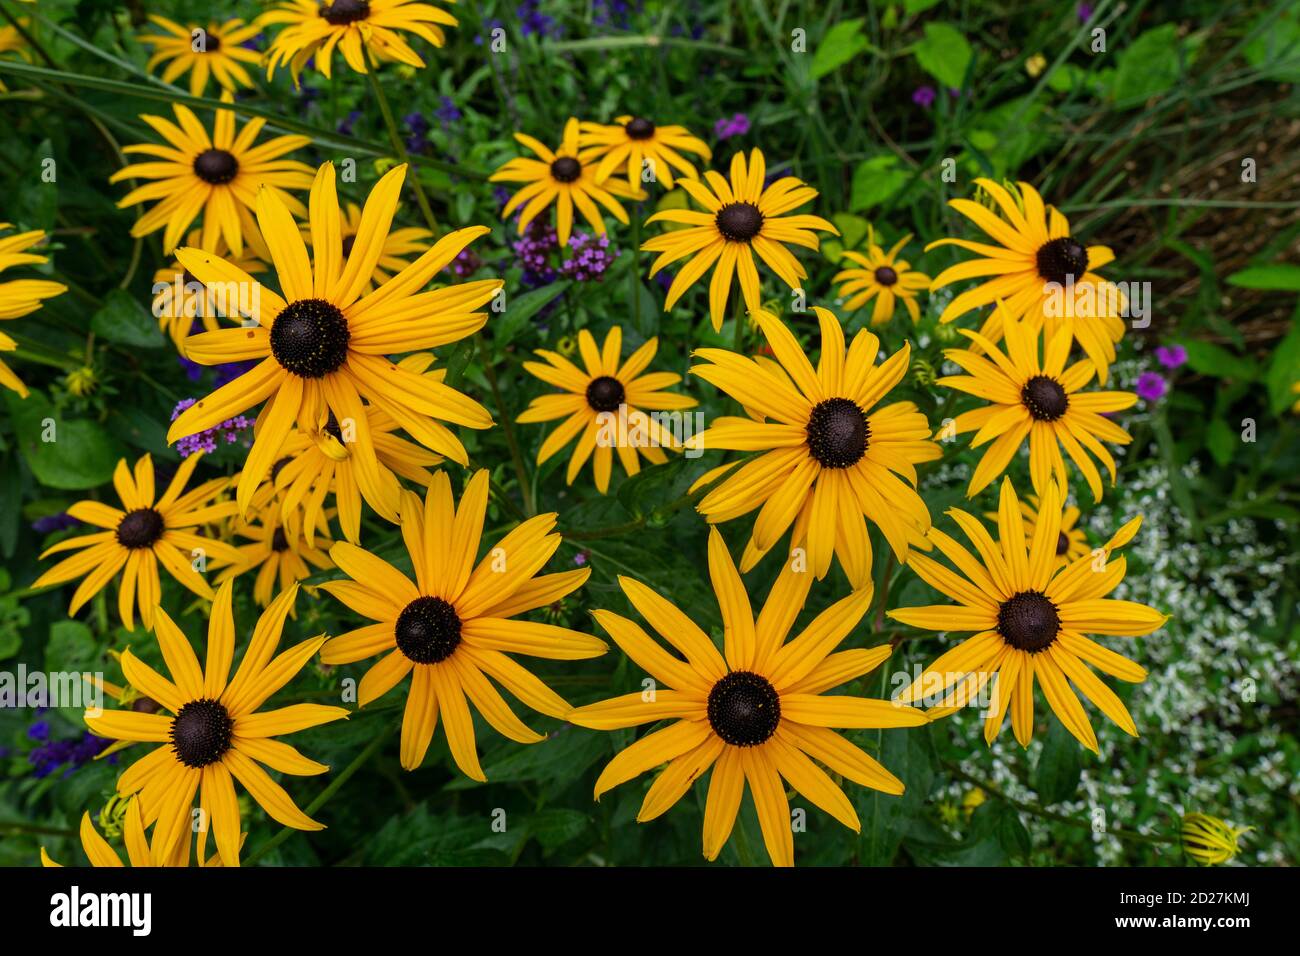 Susans à yeux noirs jaunes, Rudbeckia hirta, floraison dans un jardin d'été Banque D'Images